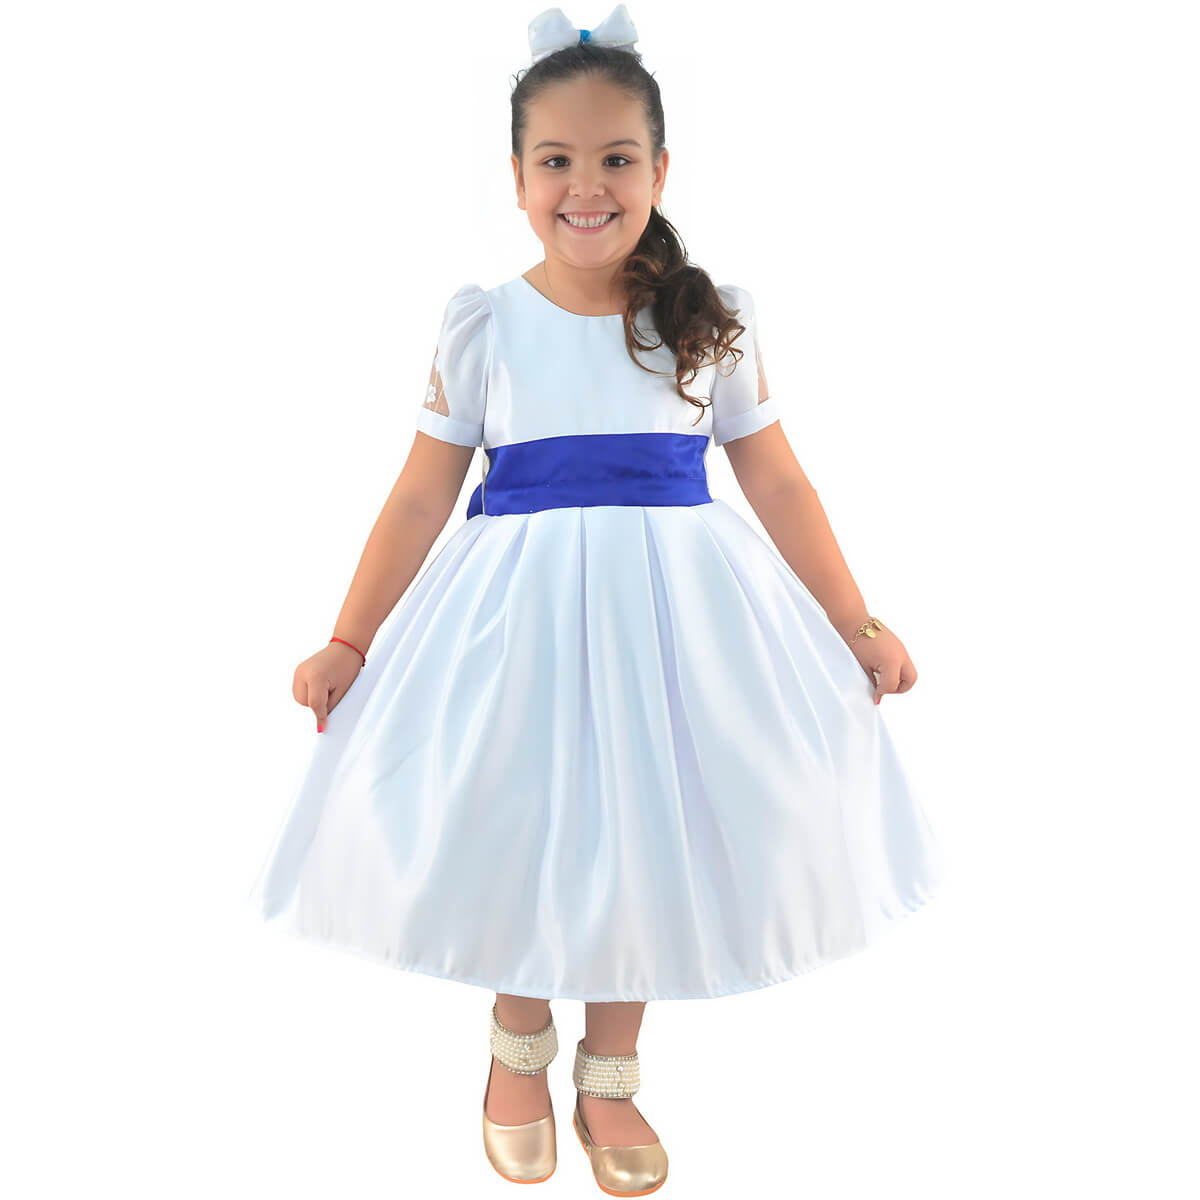 Vestido de Formatura Infantil ABC: Branco com Detalhes em Azul Royal